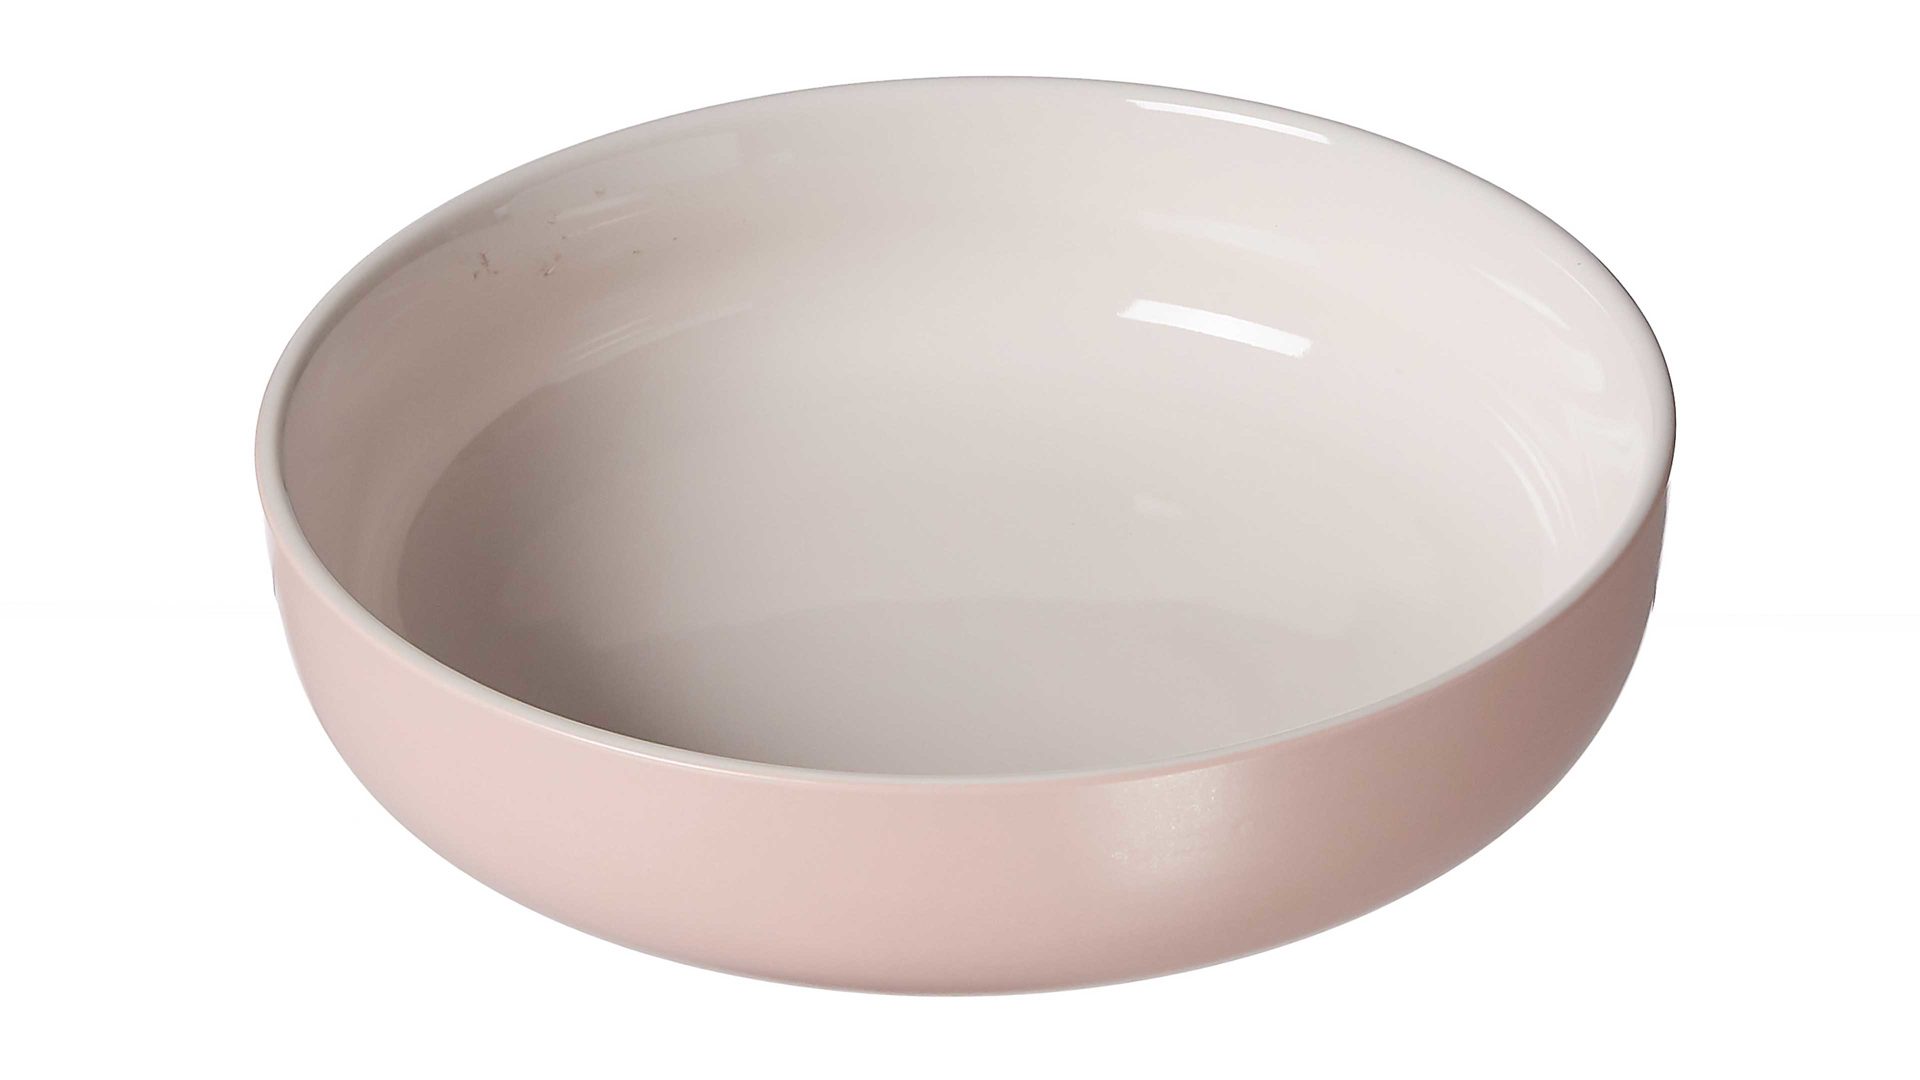 Schale Ritzenhoff & breker aus Keramik in Pink Ritzenhoff & Breker Schale Jasper roséfarbenes Steinzeug – Durchmesser ca. 19 cm